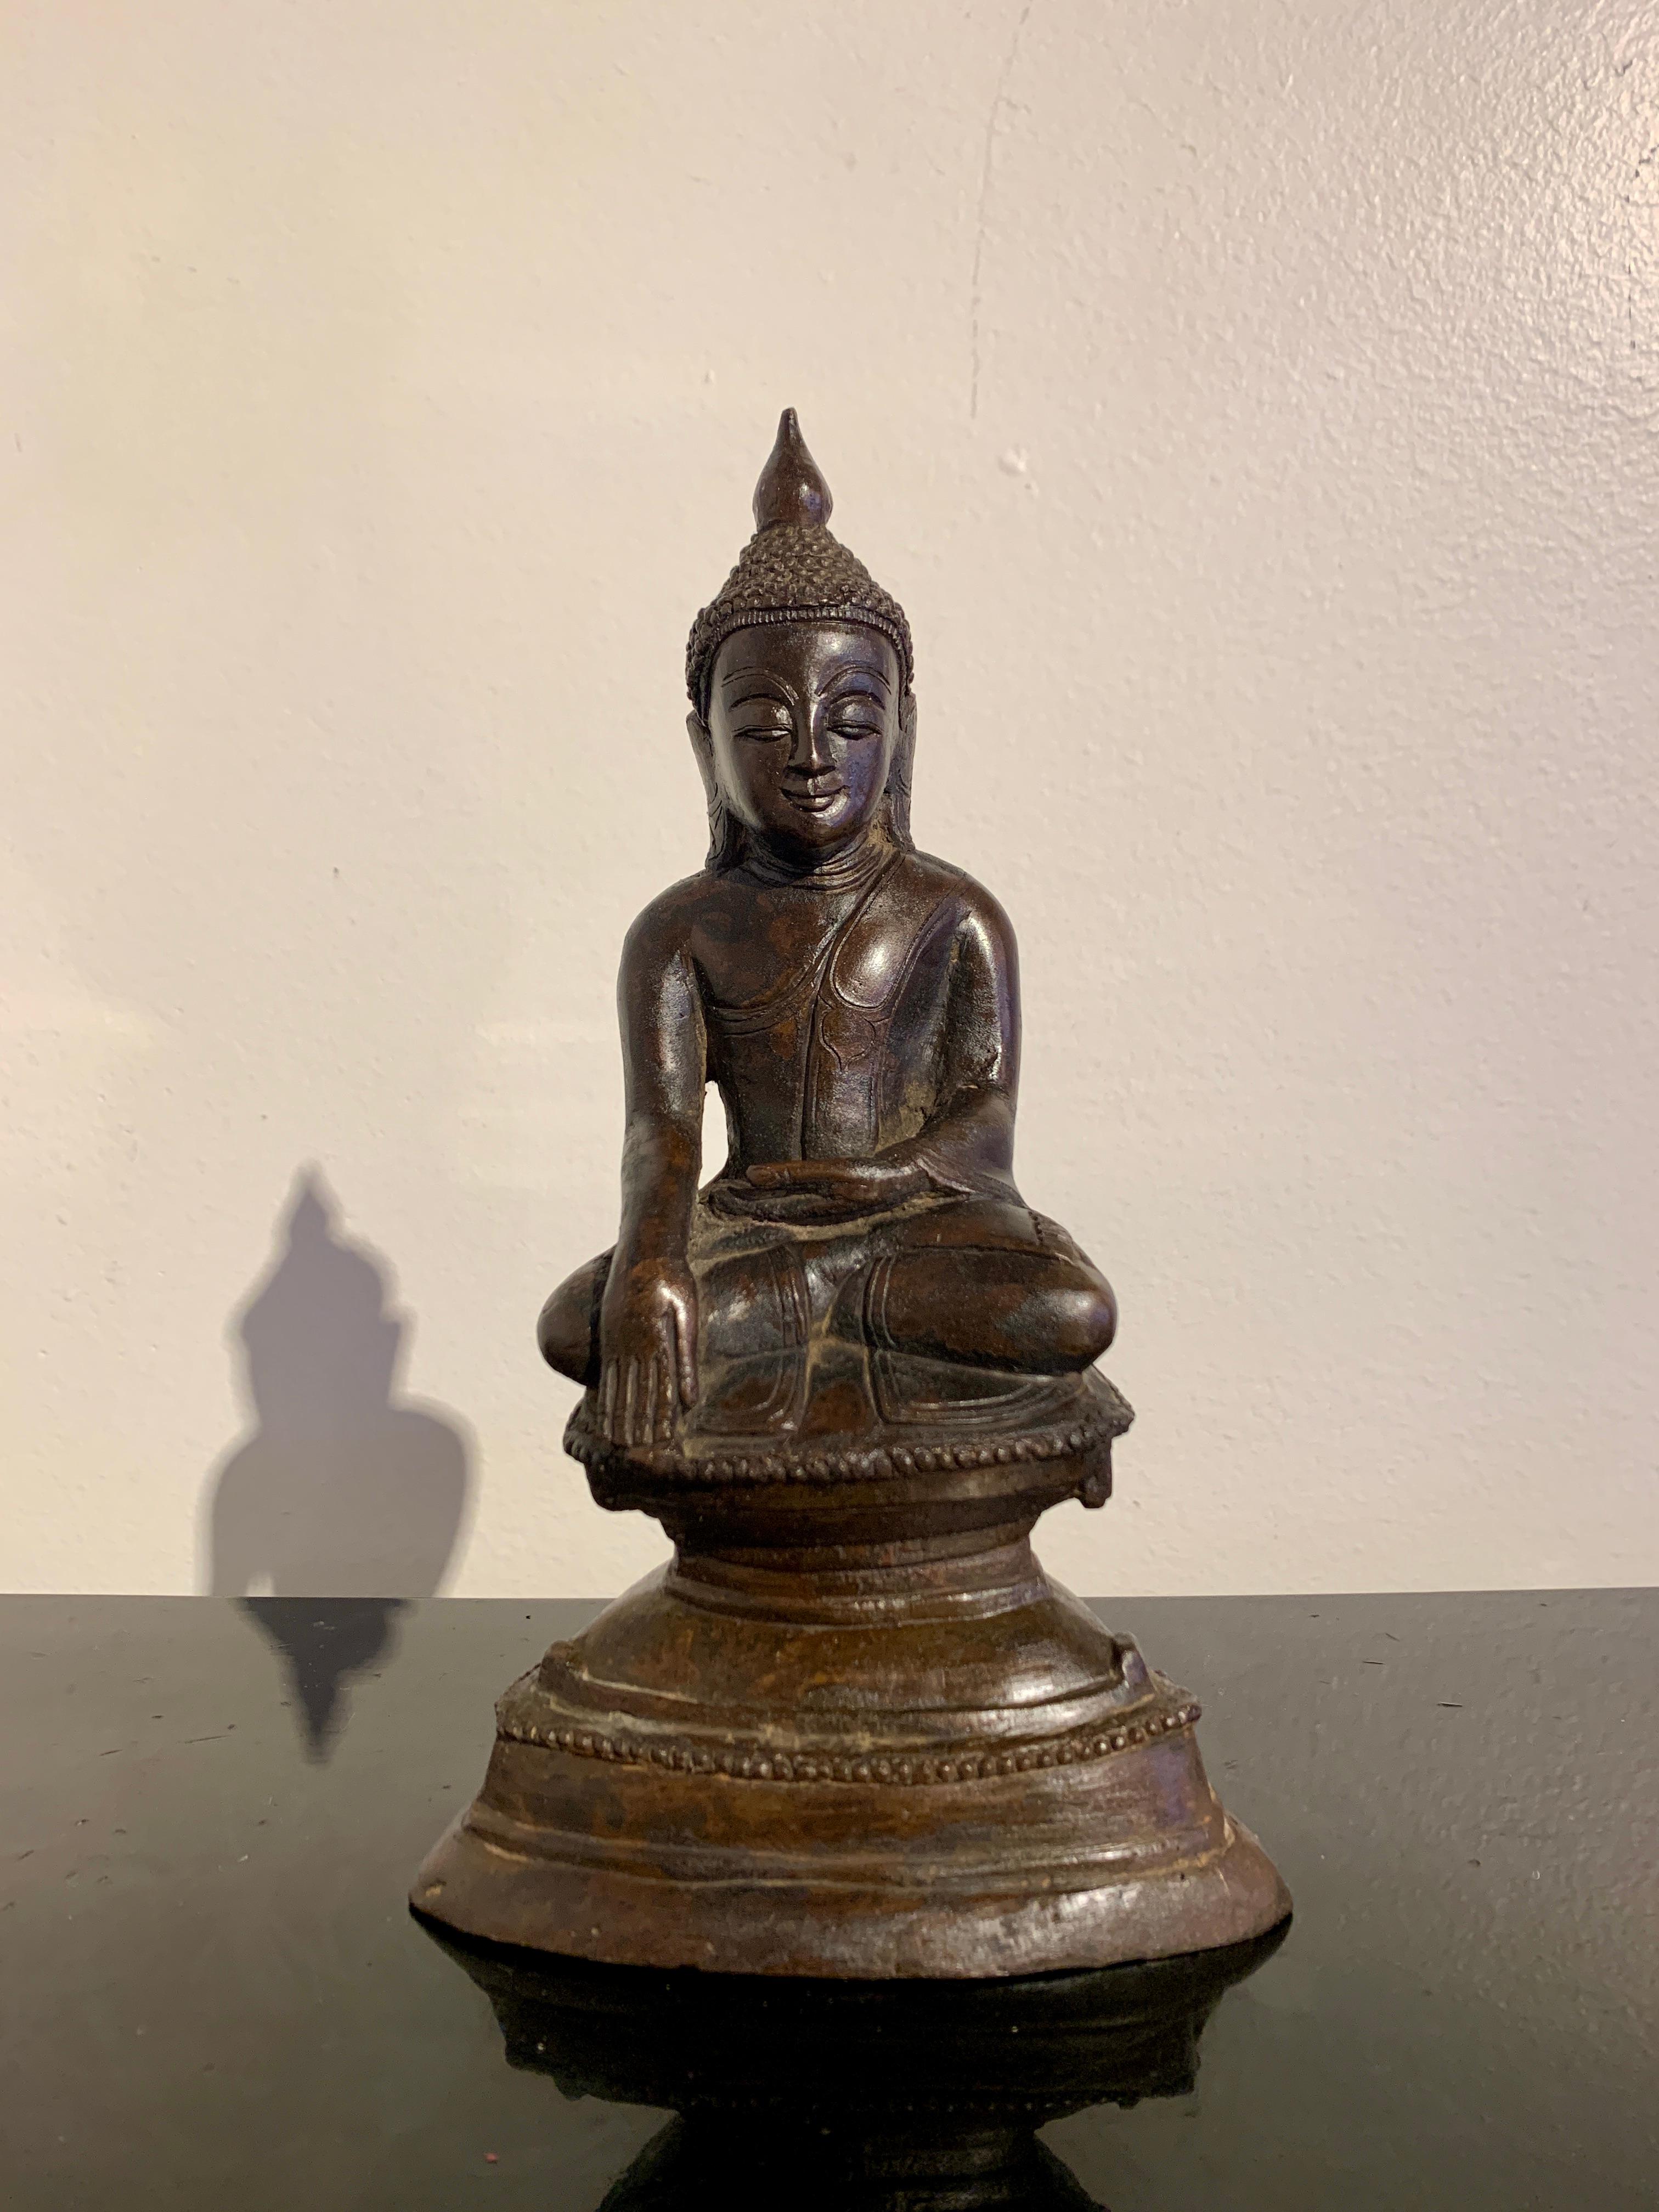 Un petit et charmant bouddha birman en bronze moulé dans le style Ava, fin du 19e ou début du 20e siècle, Myanmar (Birmanie).

L'image représente le Bouddha historique, Shakyamuni, assis en position de lotus complet, les mains en bhumisparsha